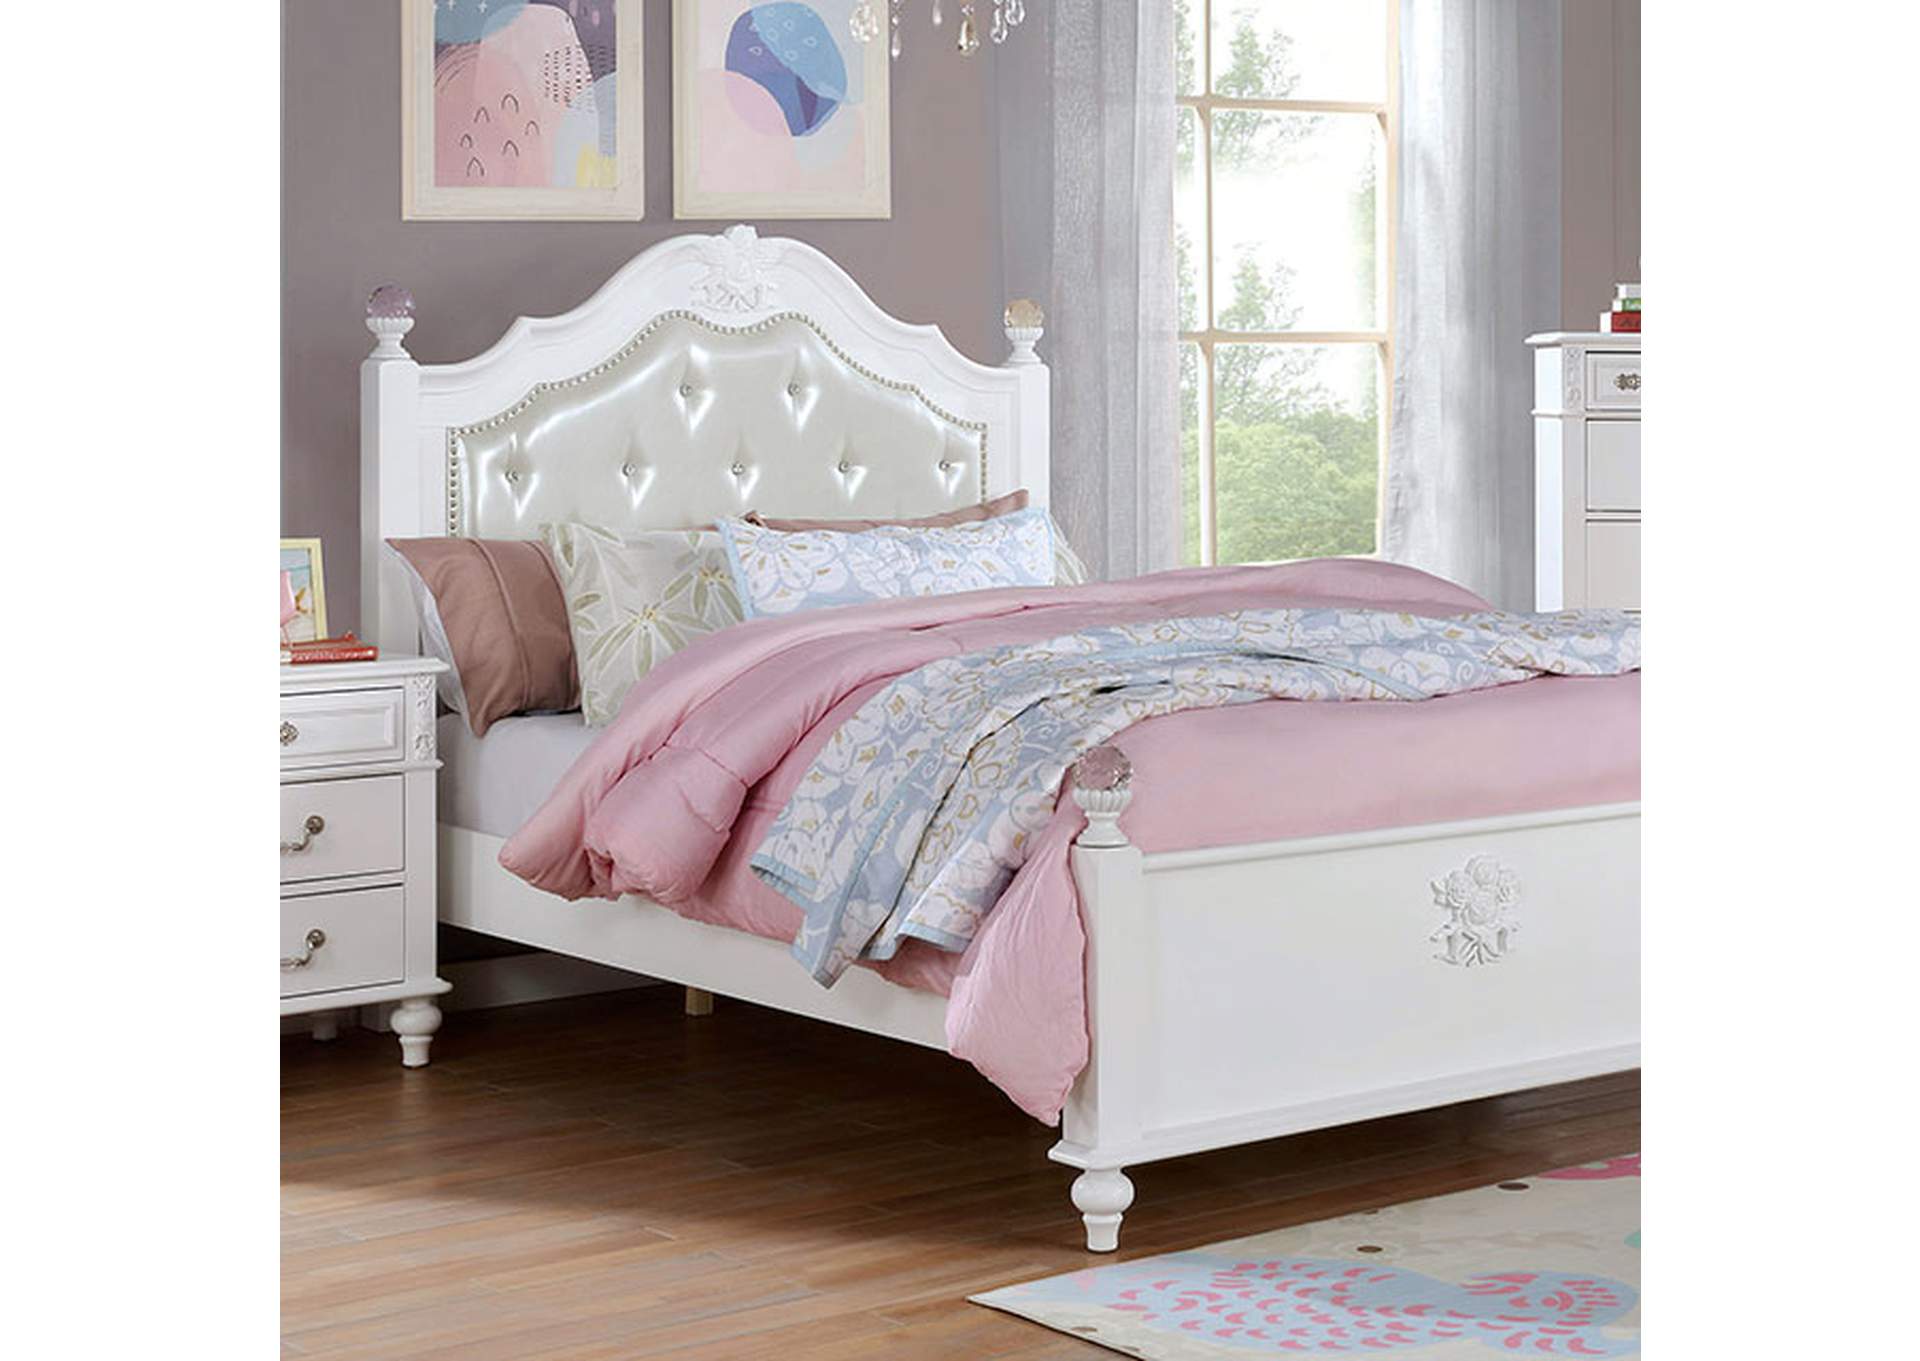 Belva Twin Bed,Furniture of America